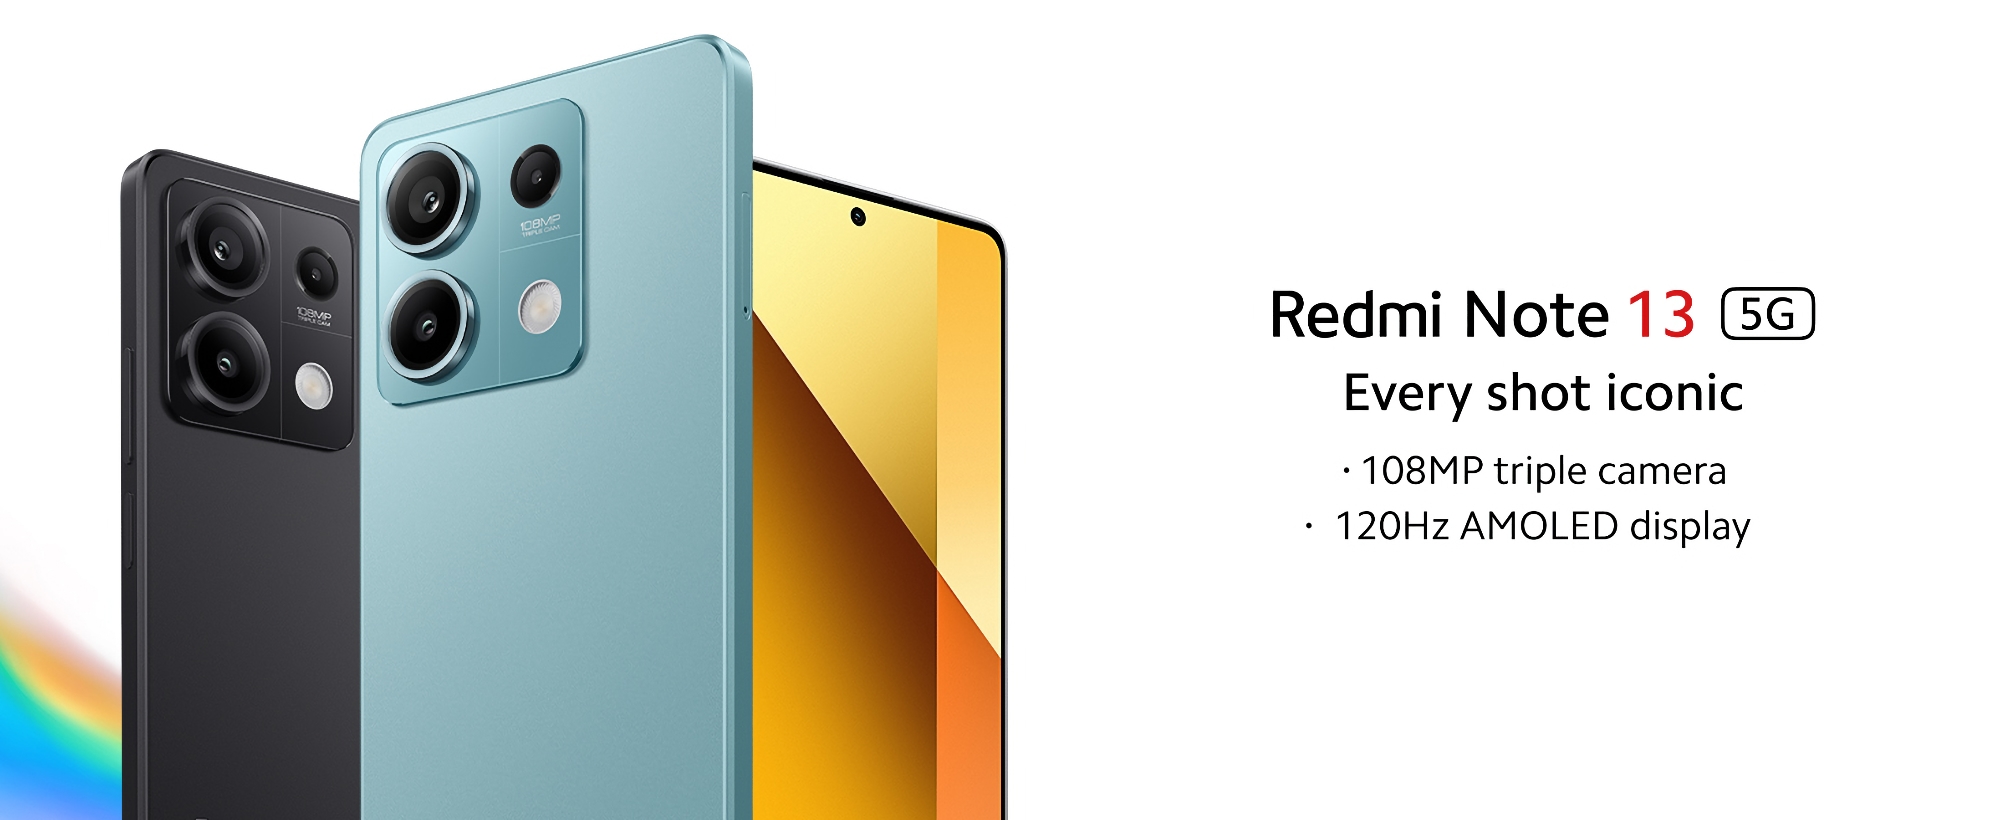 Xiaomi heeft de Redmi Note 13 5G wereldwijd op de markt gebracht